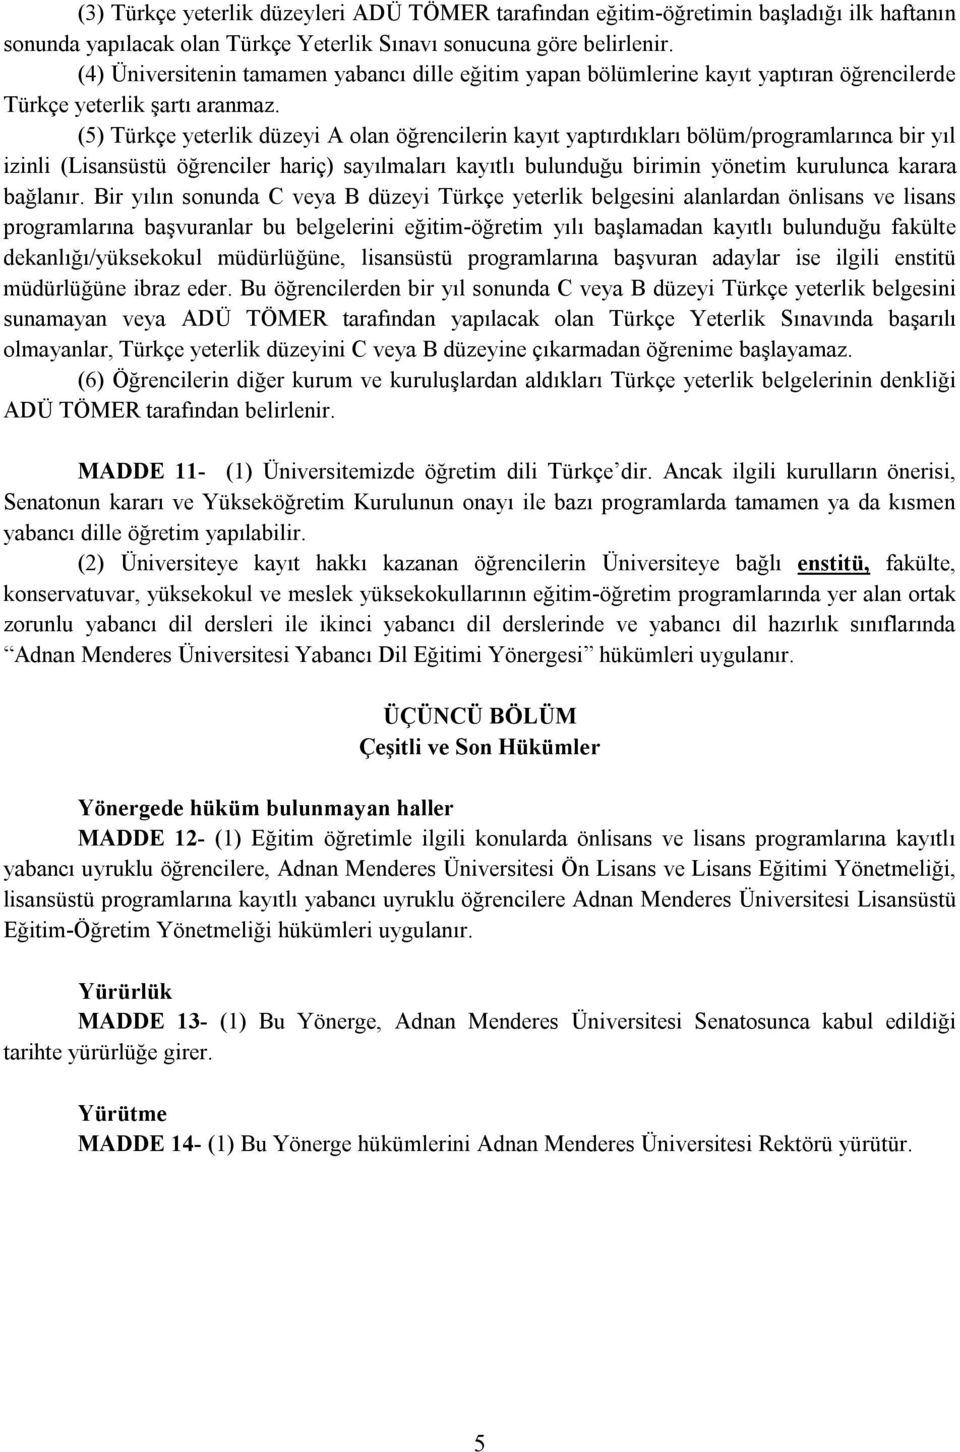 (5) Türkçe yeterlik düzeyi A olan öğrencilerin kayıt yaptırdıkları bölüm/programlarınca bir yıl izinli (Lisansüstü öğrenciler hariç) sayılmaları kayıtlı bulunduğu birimin yönetim kurulunca karara